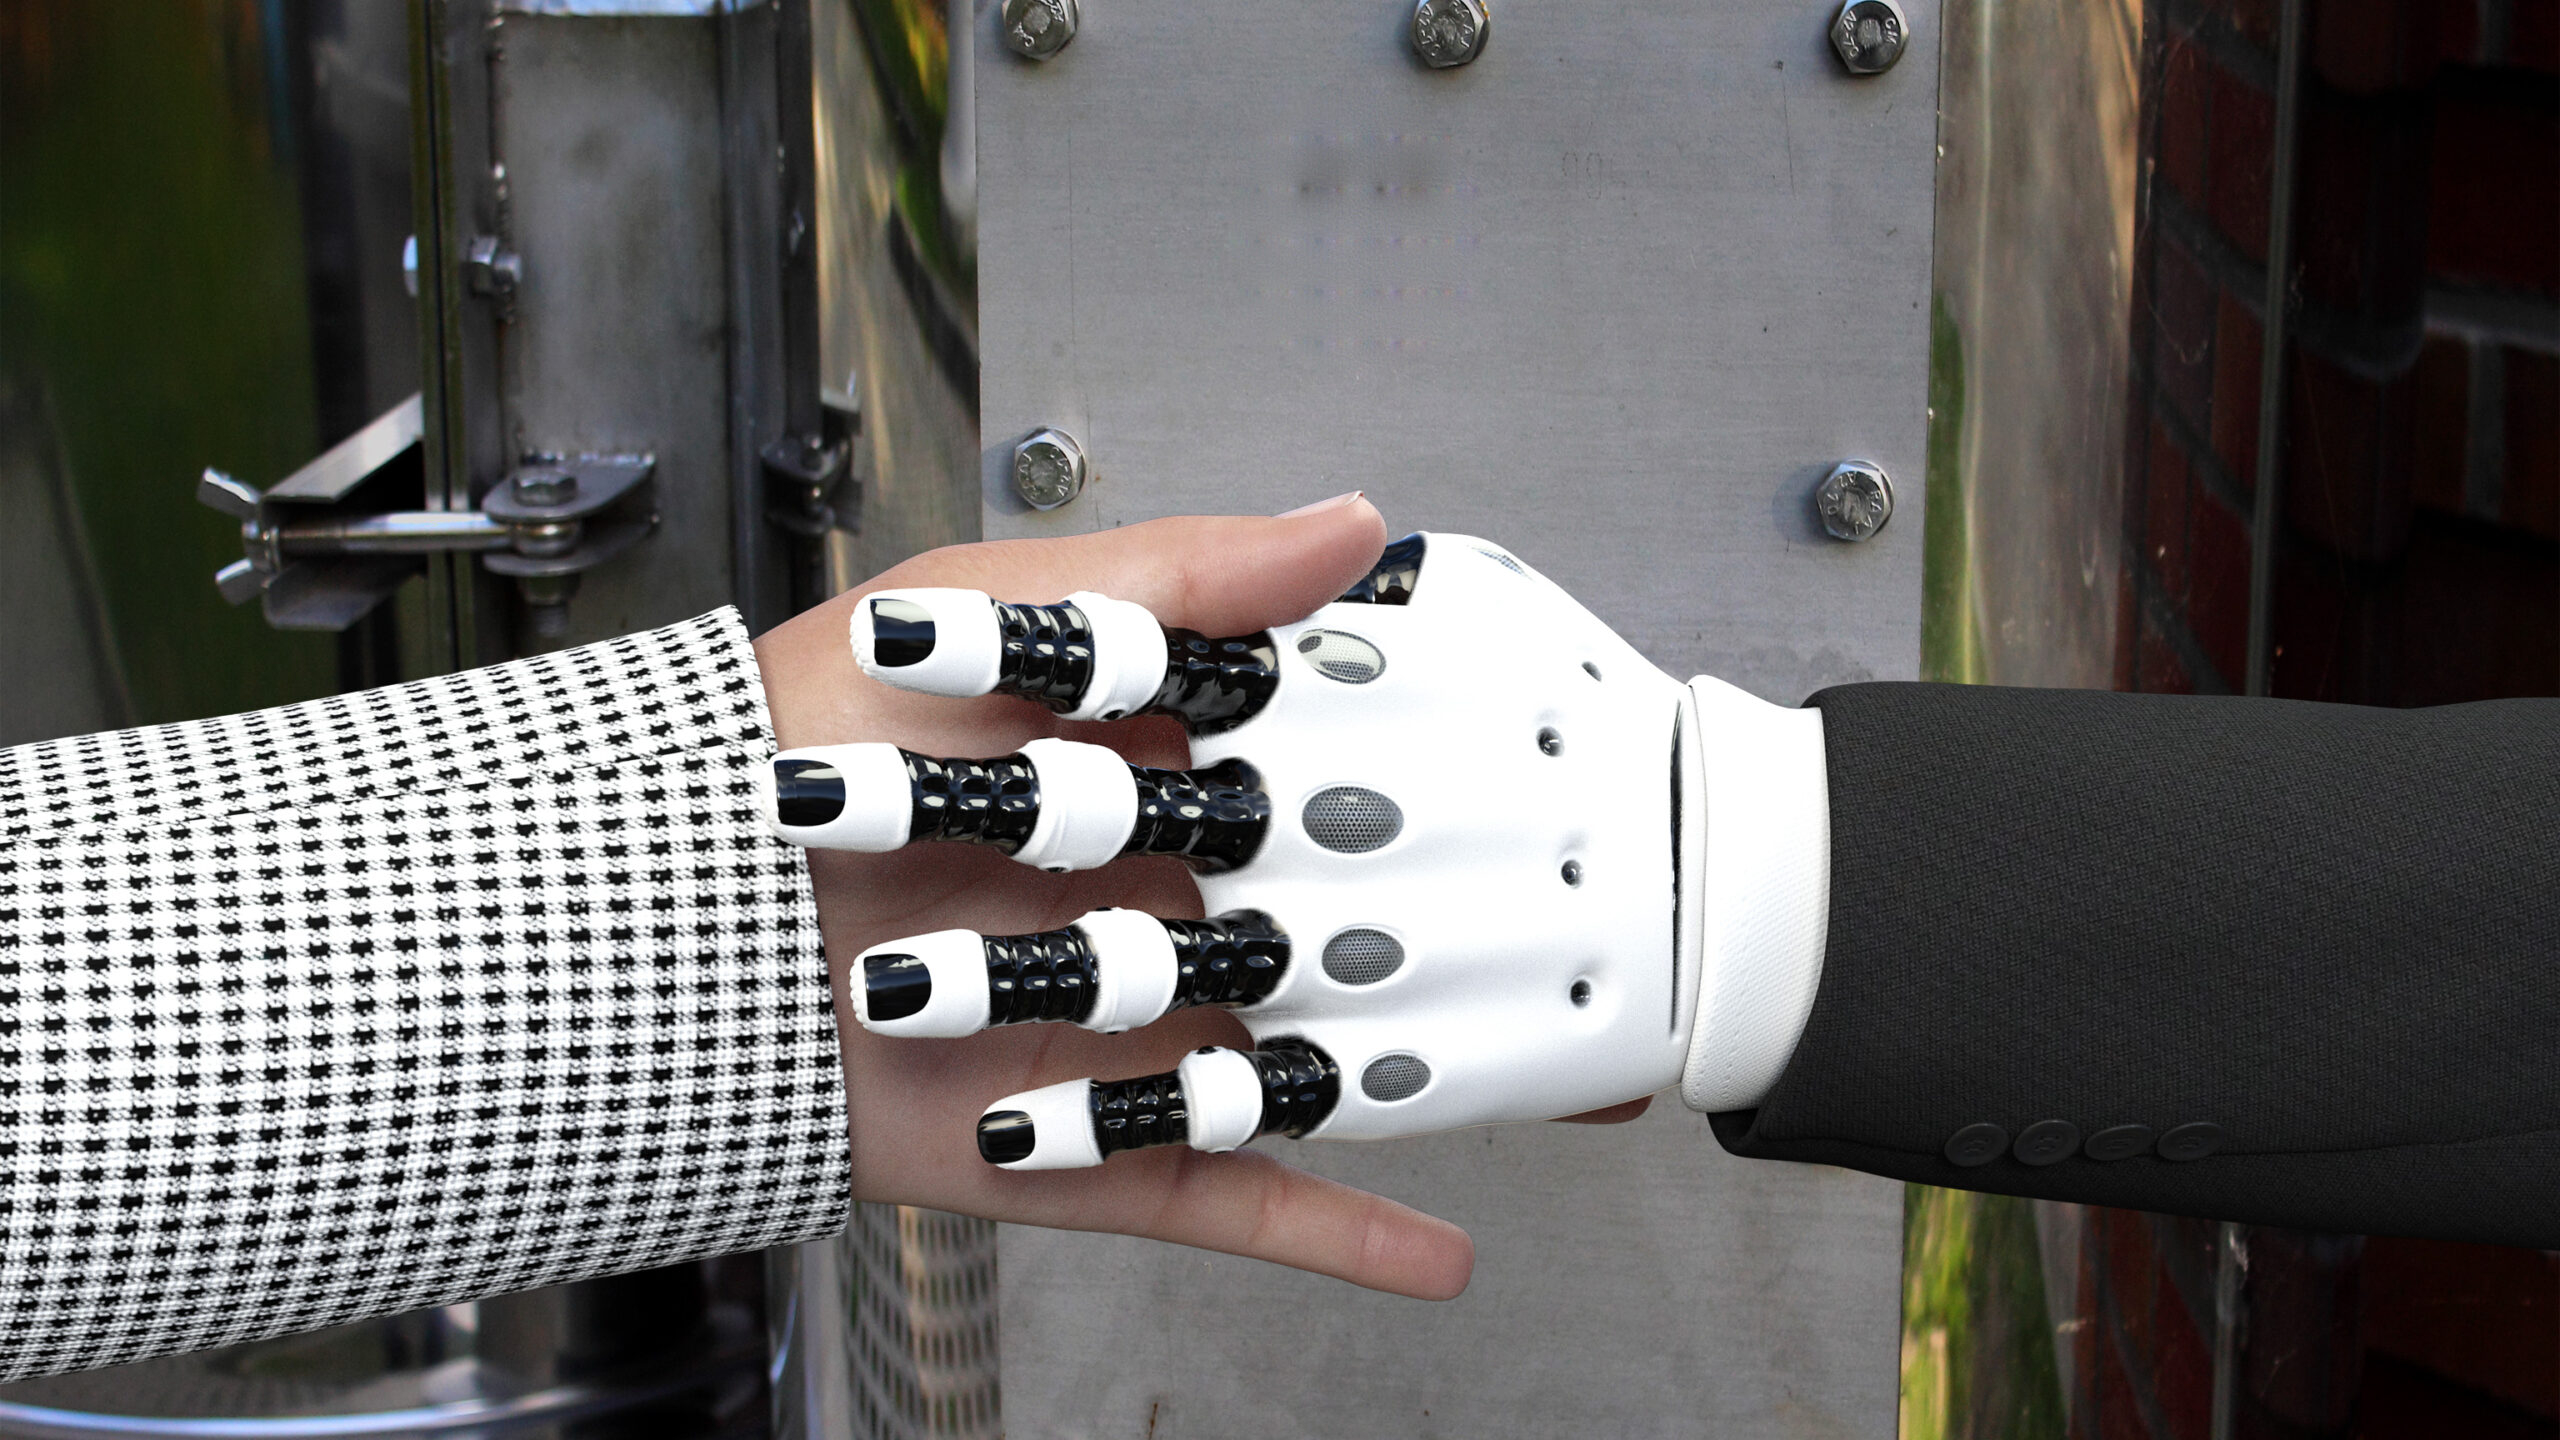 В РПЦ предложили ввести запрет на использование человеческих лиц и голоса для роботов